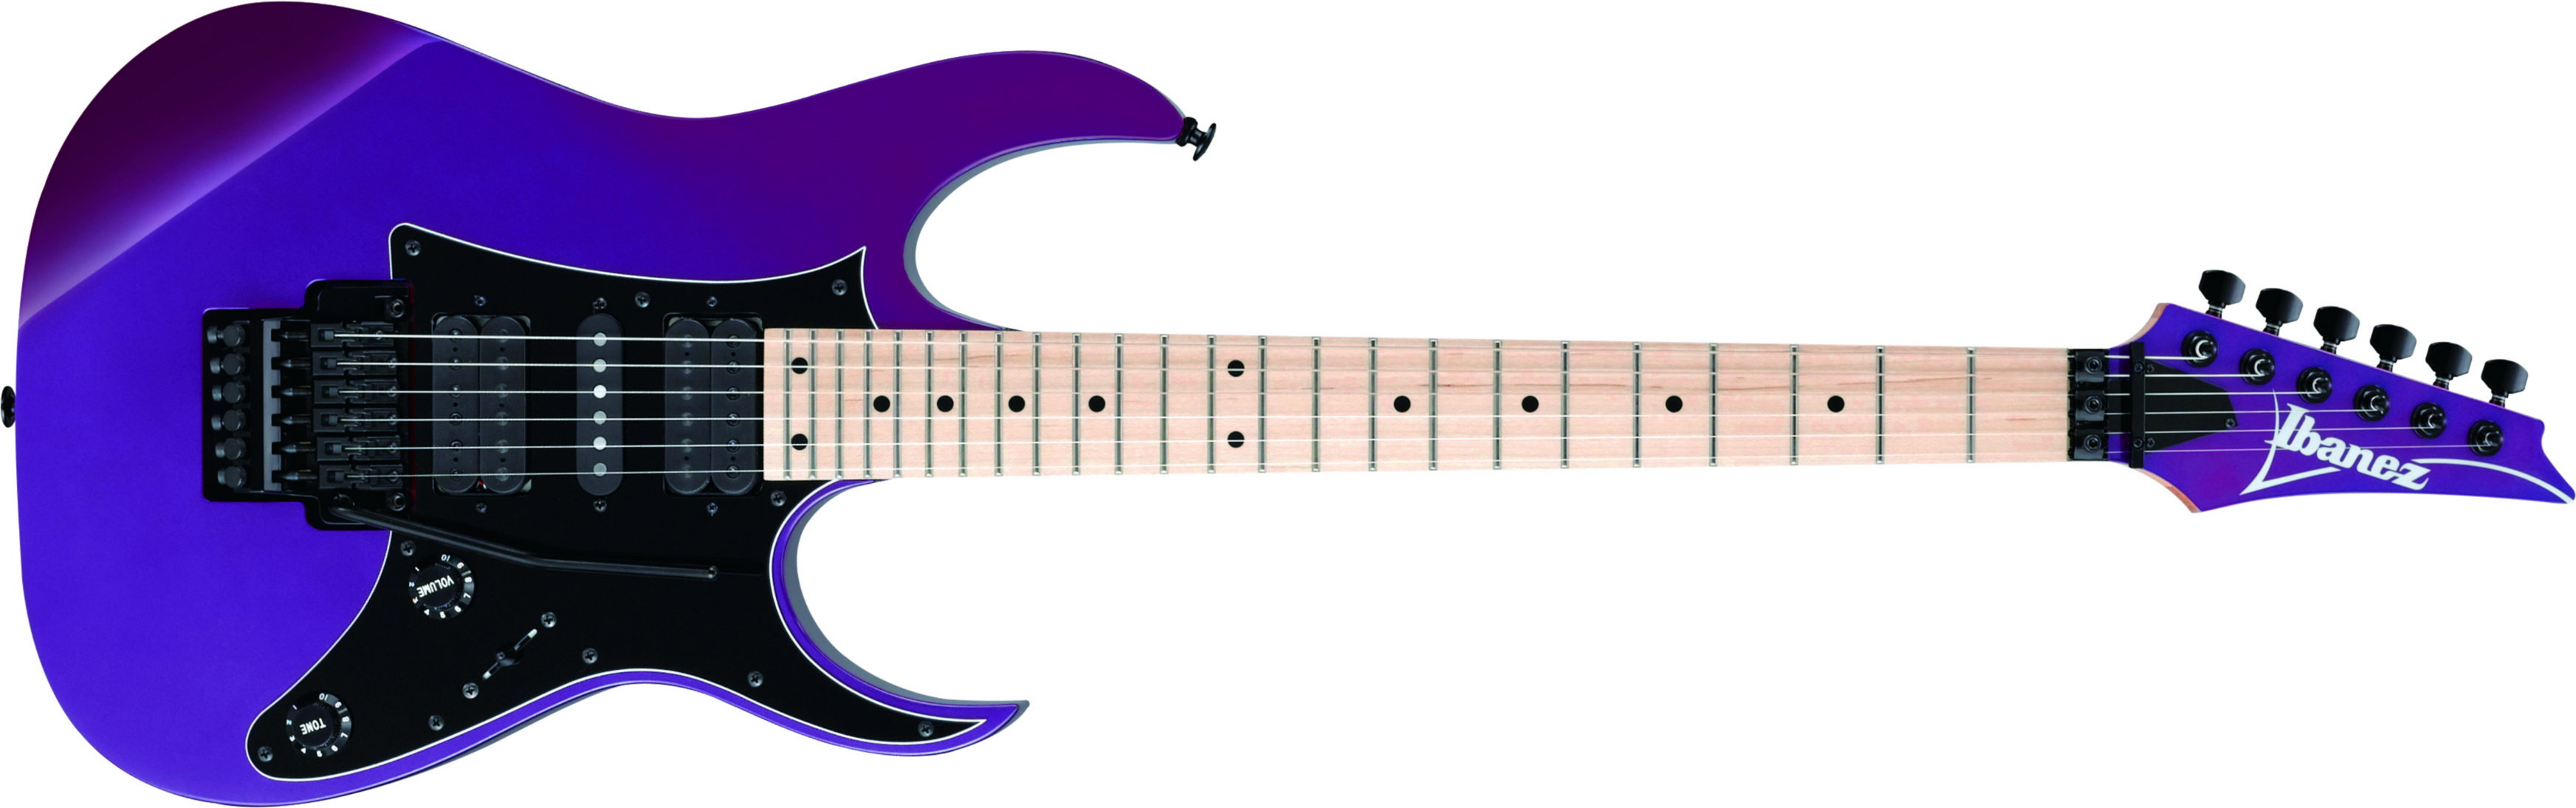 Ibanez Rg550 Pn Genesis Japon Hsh Fr Mn - Purple Neon - Guitare Électrique Forme Str - Main picture